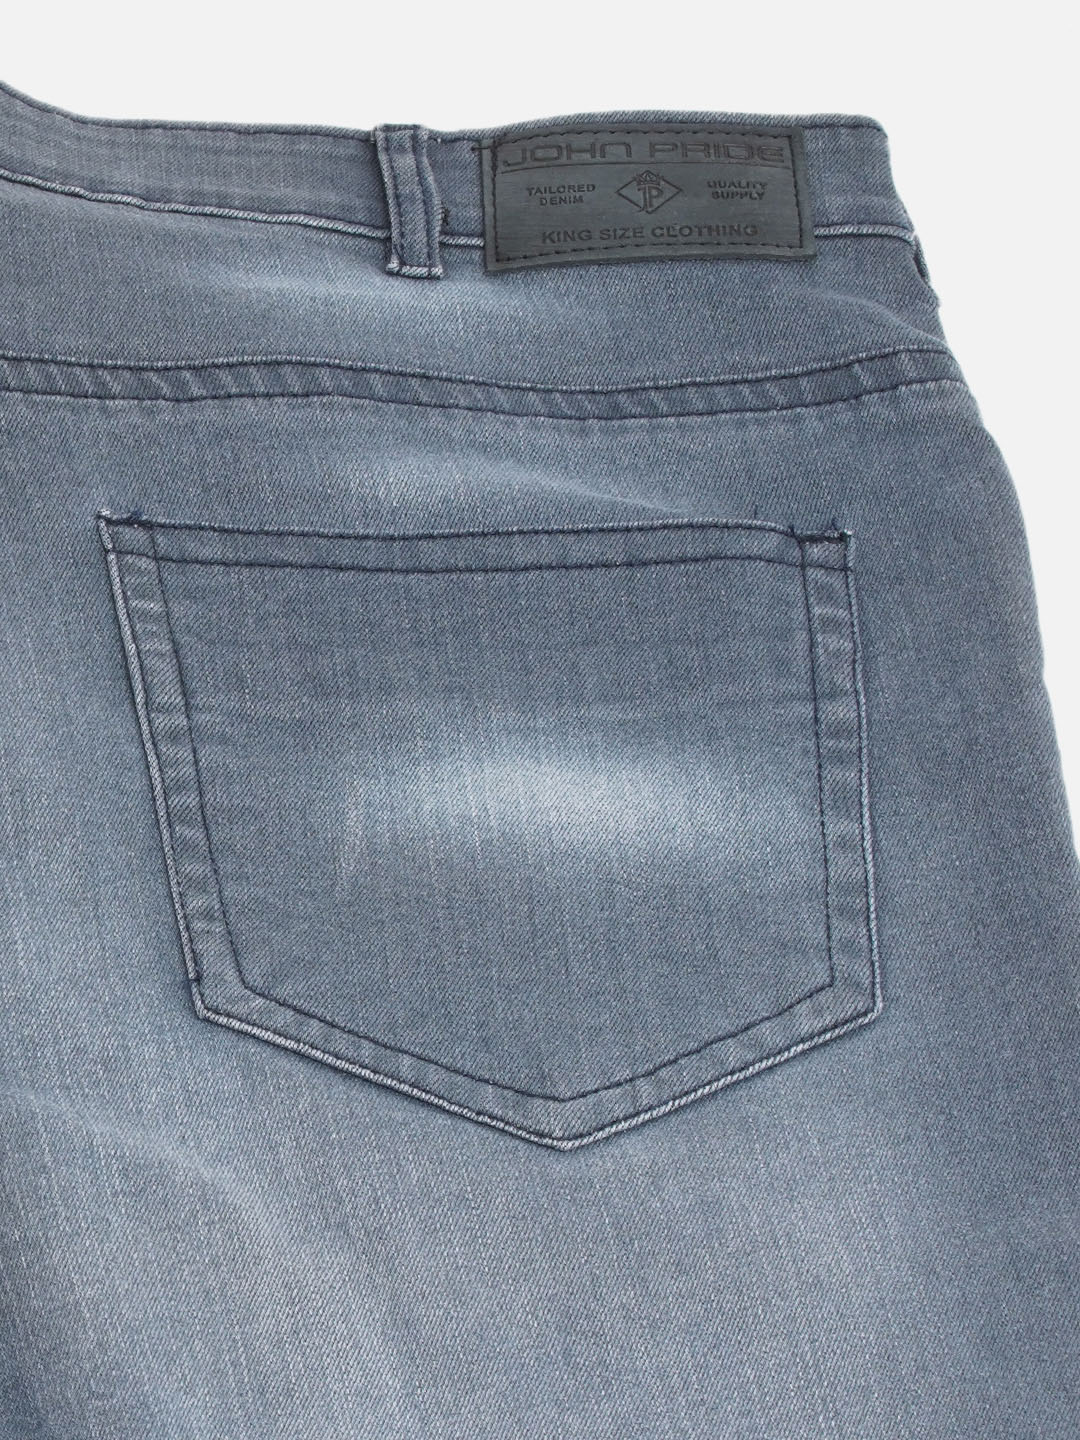 bottomwear/jeans/JPJ12254/jpj12254-2.jpg